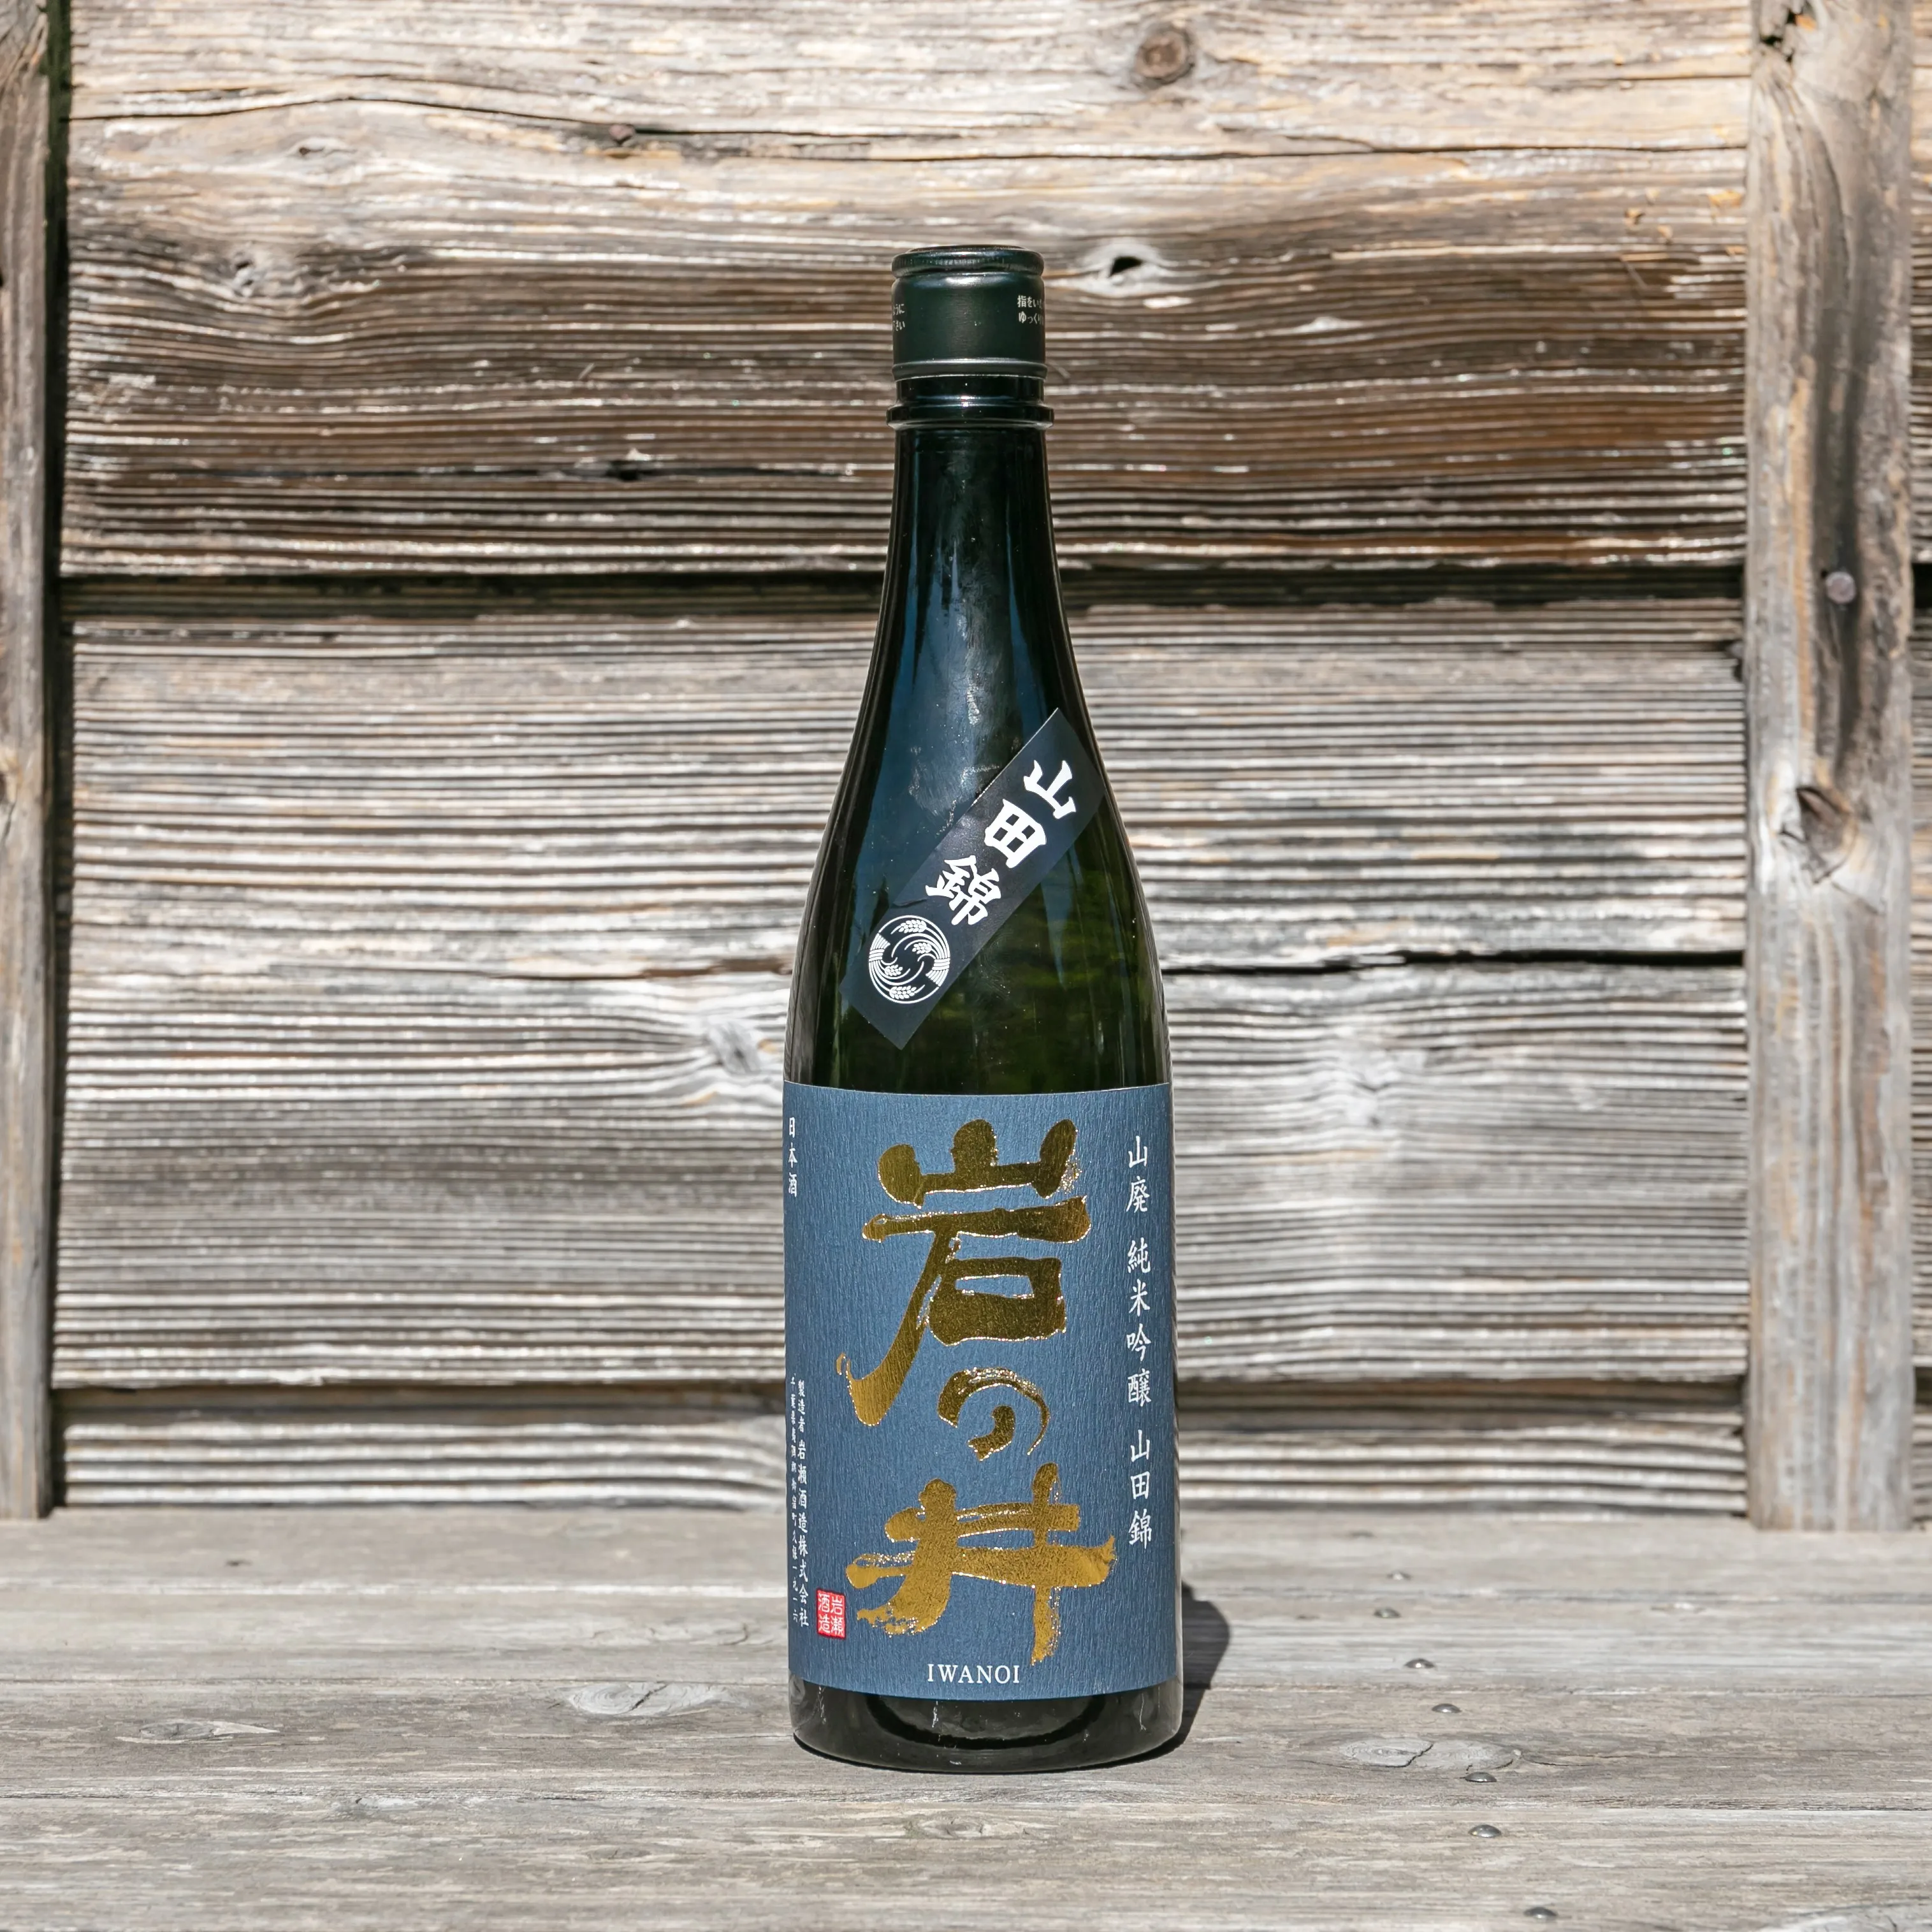 Yamadanishiki насыщенный вкус, достойная кислотная продукция, спиртовой ликер